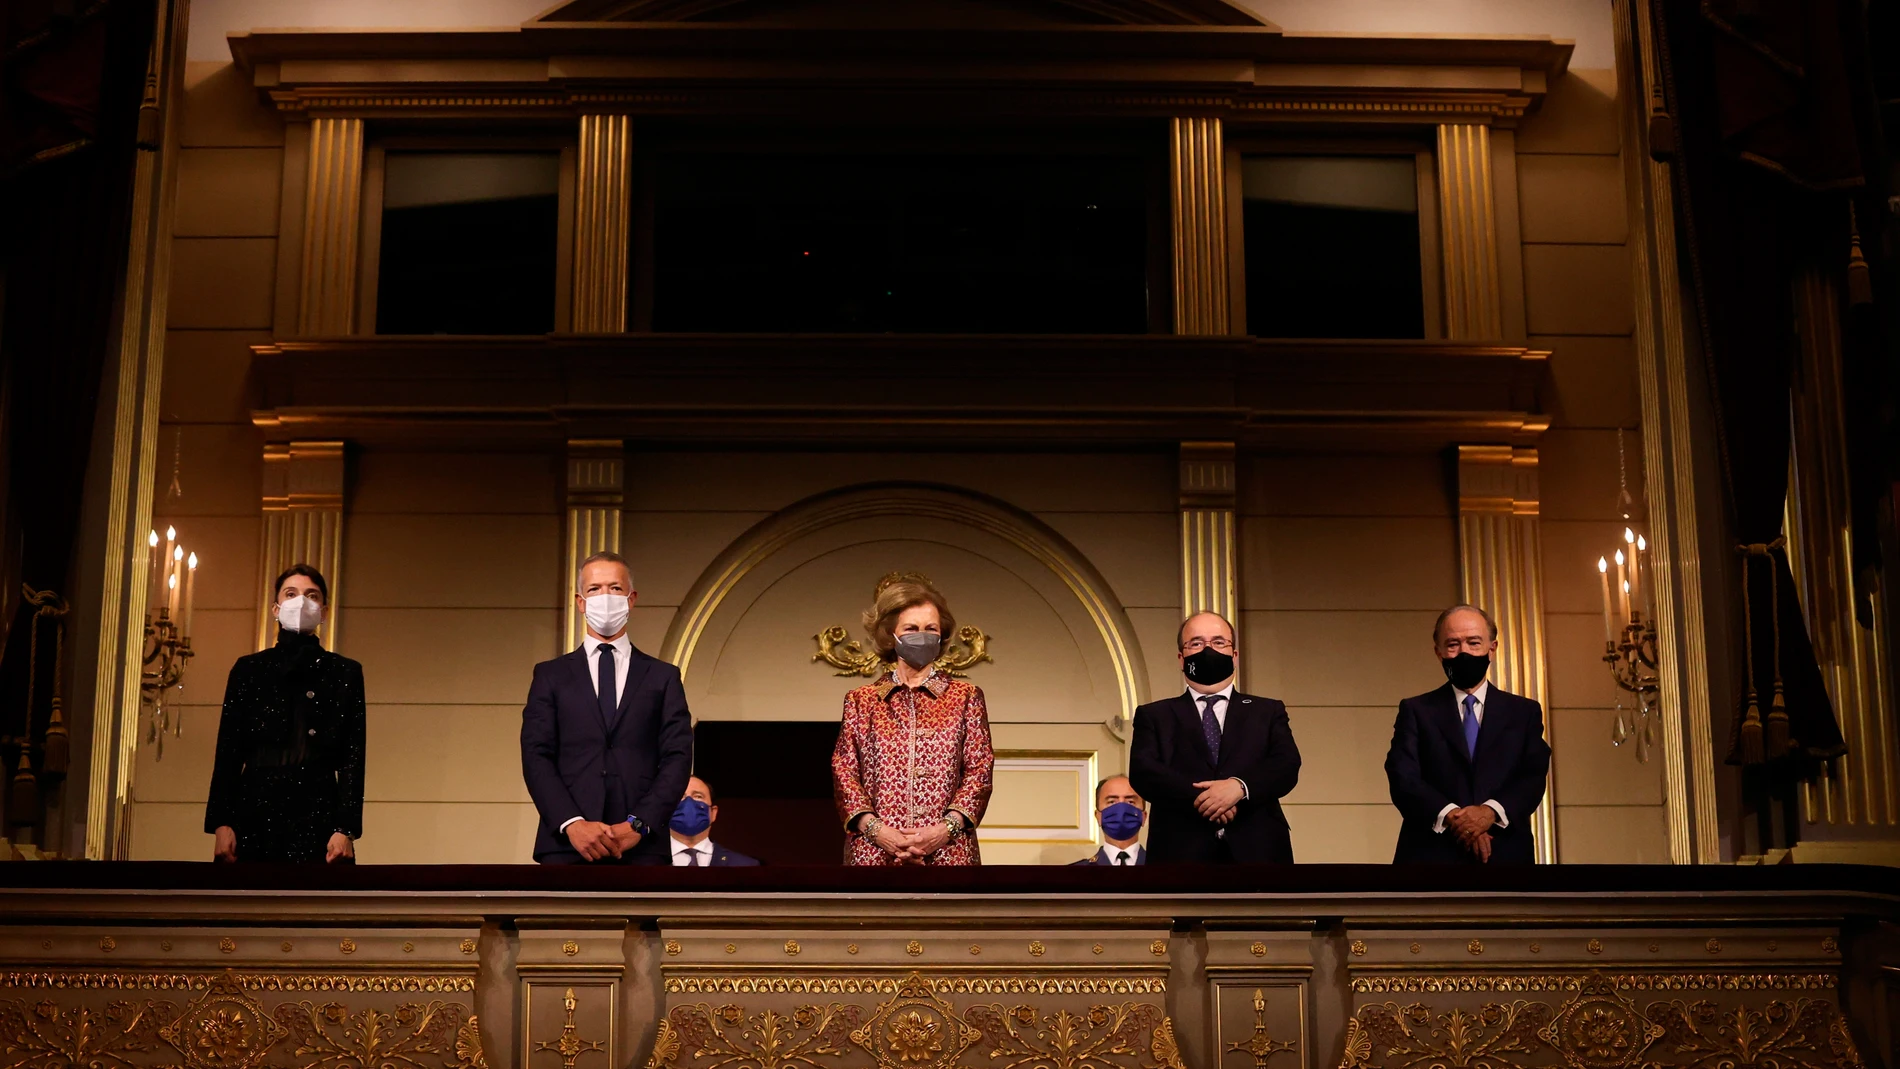 La reina Sofía y el ministro de Cultura, Miquel Iceta entre otros asistentes, en la inauguración de la temporada 2021/2022 del Teatro Real